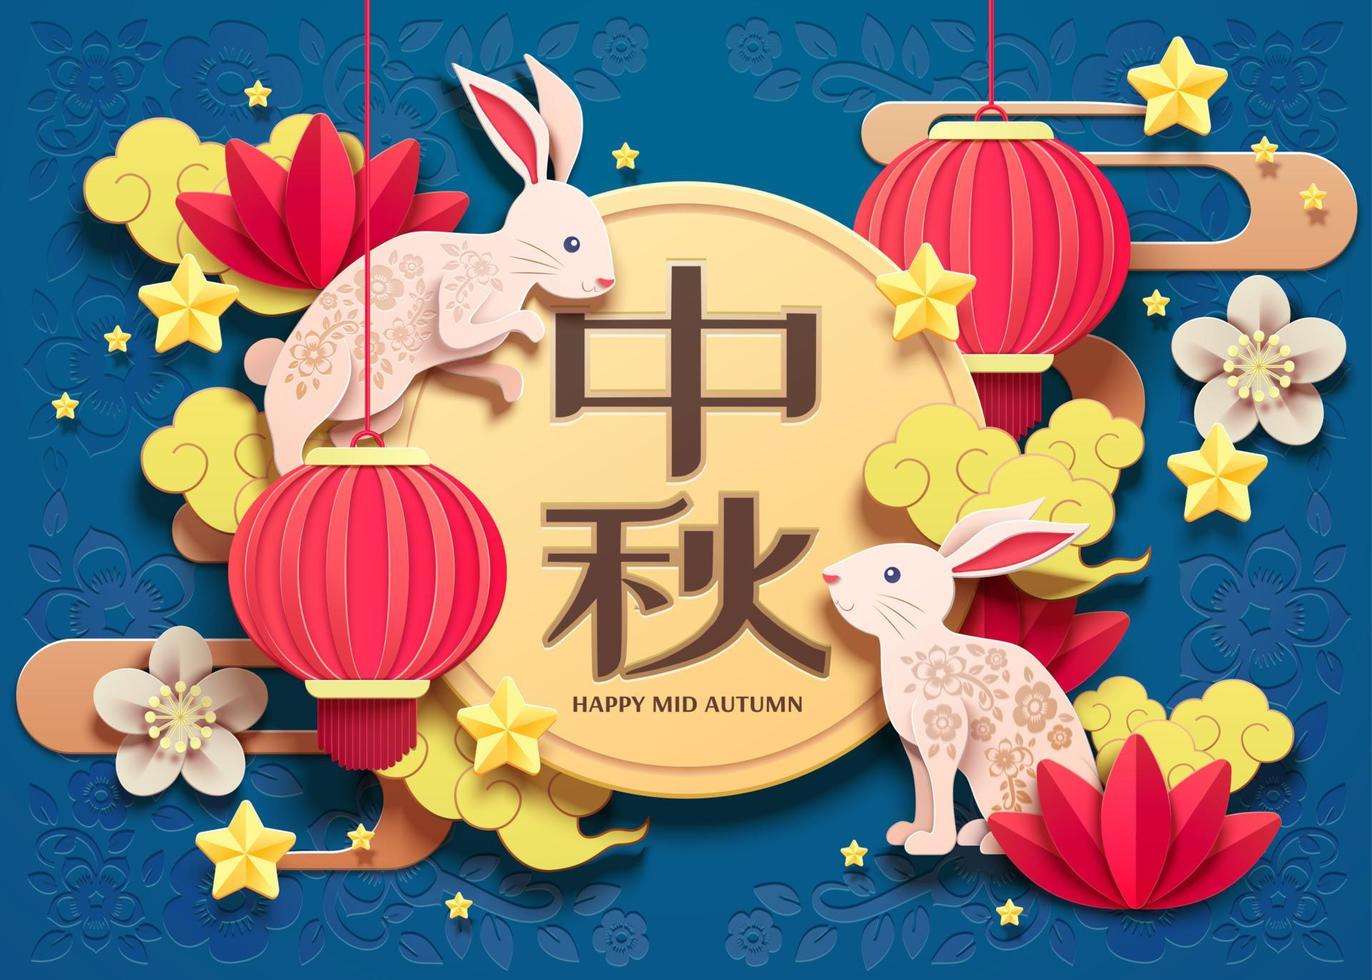 Happy Mid Autumn Festival Paper Art Design mit weißen Kaninchen- und Laternenelementen auf blauem Hintergrund, Feiertagsname in chinesischen Wörtern geschrieben vektor